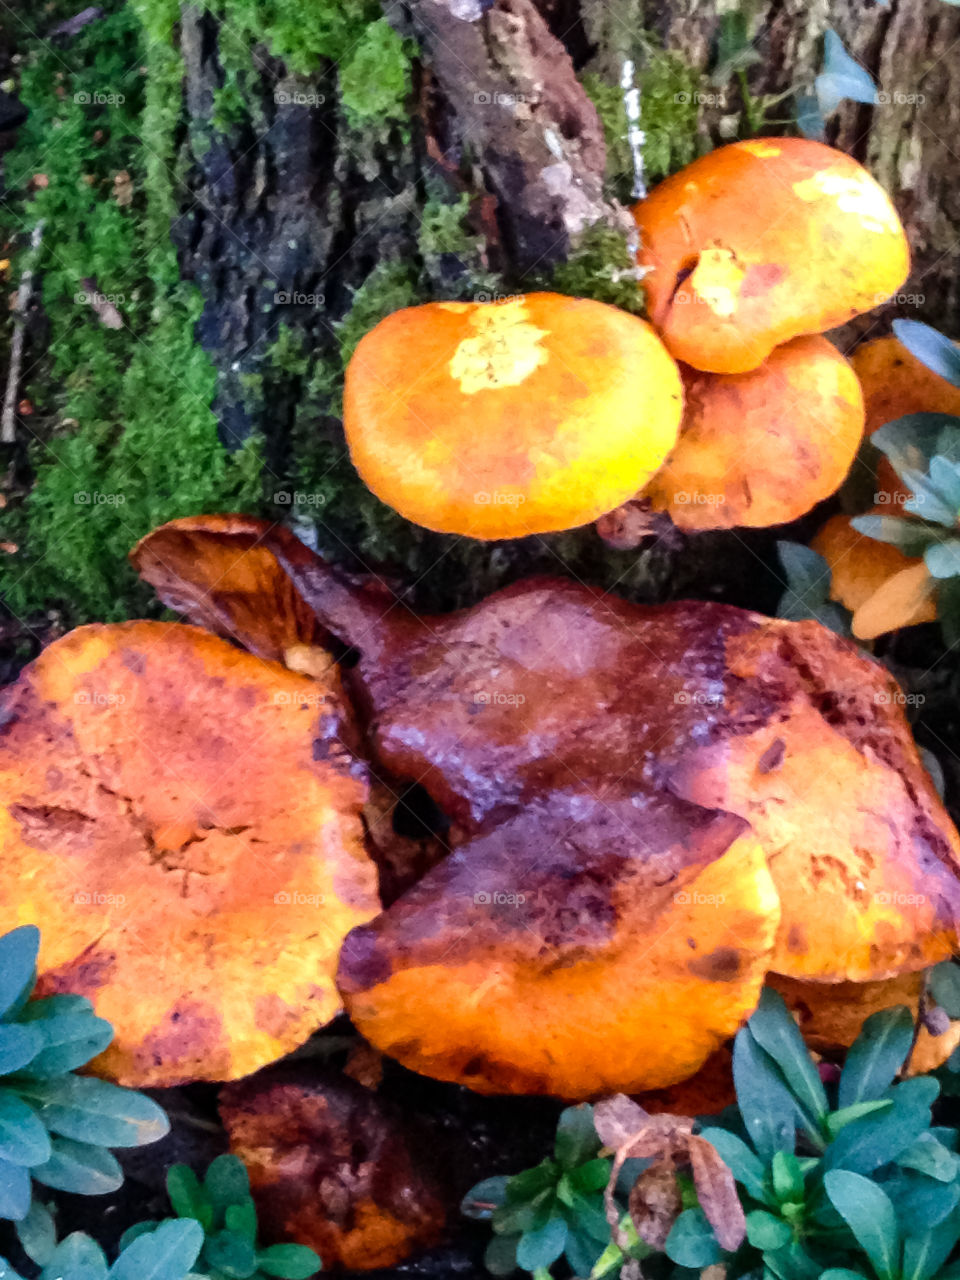 Autumn fungus